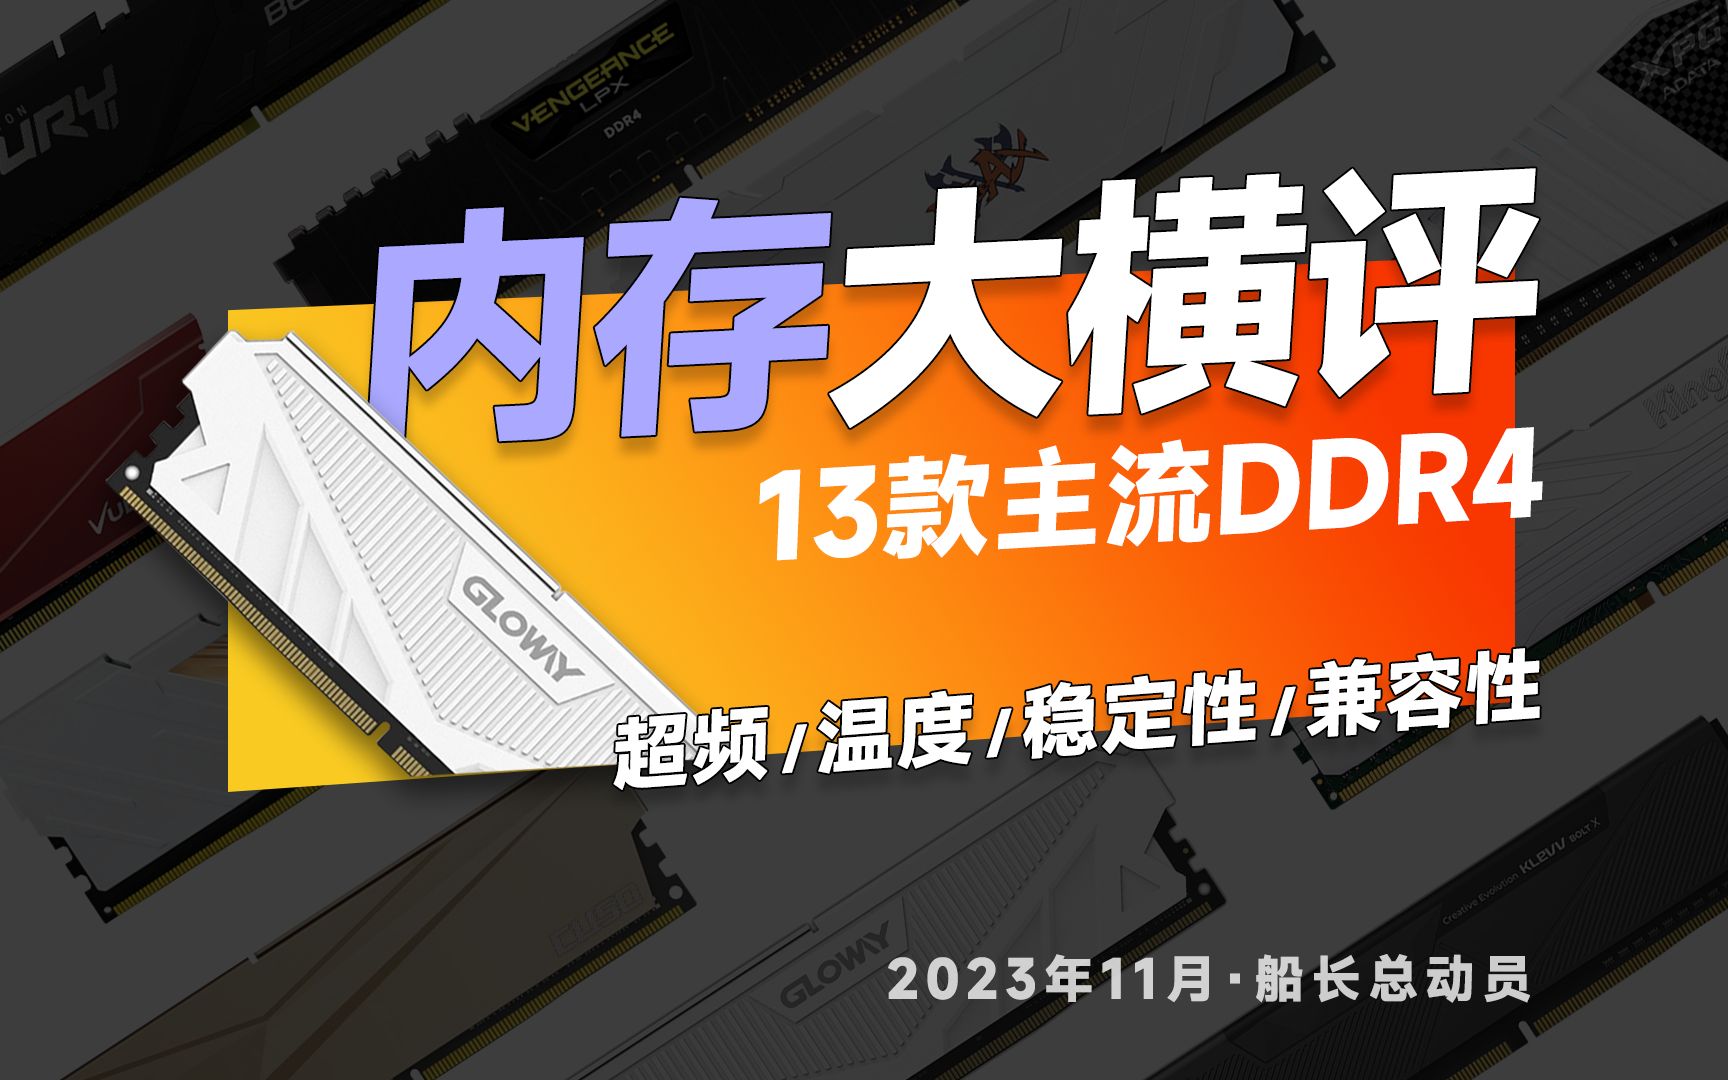 资深电脑硬件研究者分享 DDR4 内存超频技术及准备工作  第3张